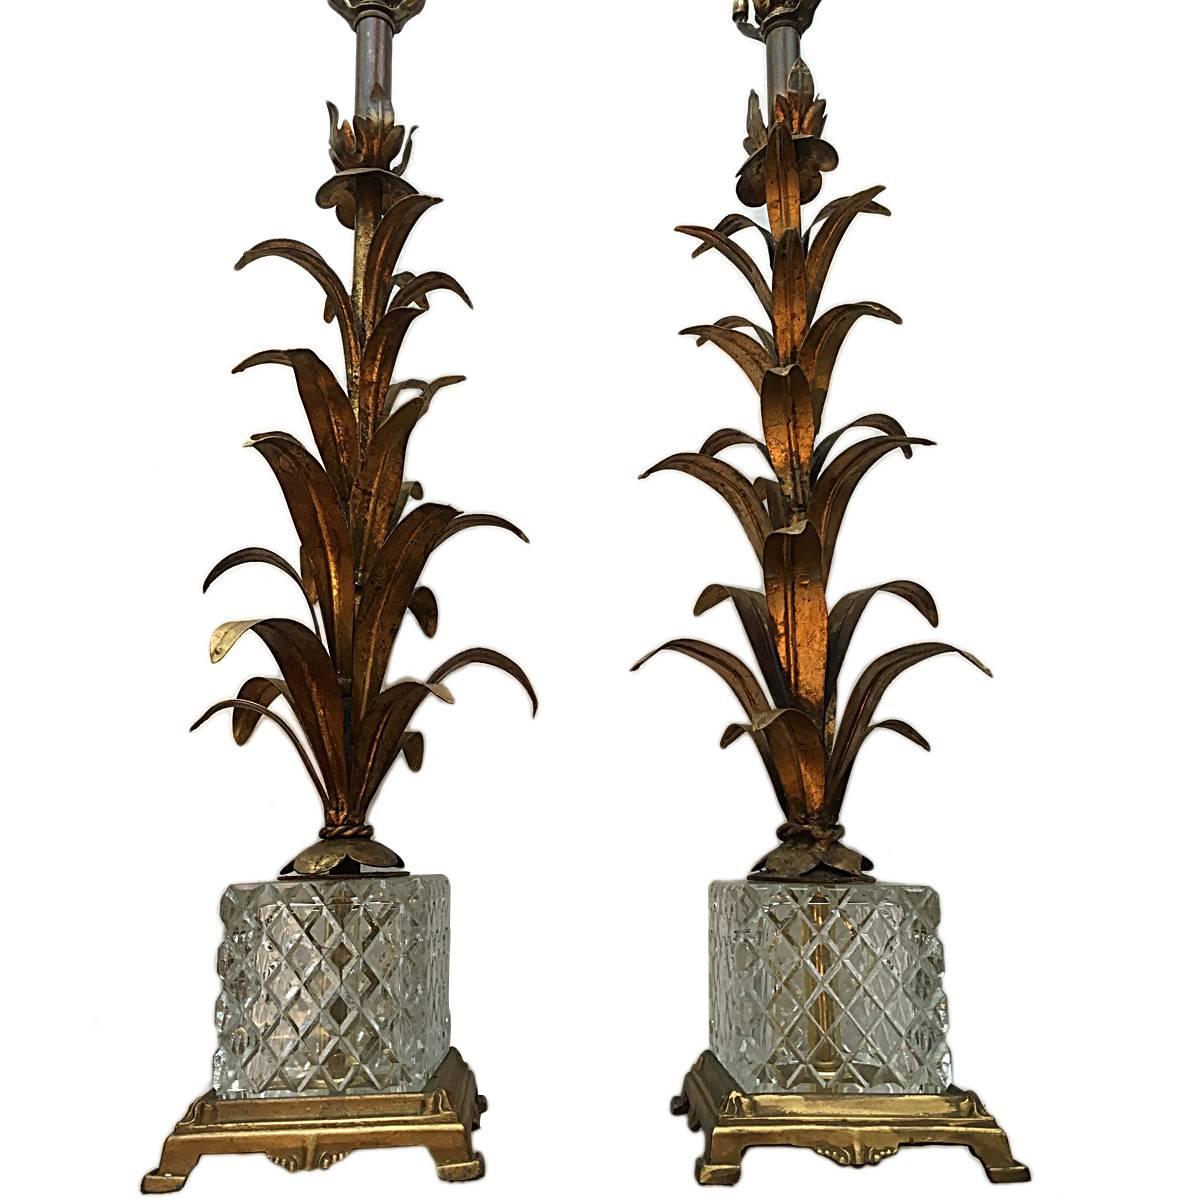 Paire de lampes palmiers italiennes, datant des années 1950, en métal doré, avec une base en verre taillé et en bronze.
Mesures : 21